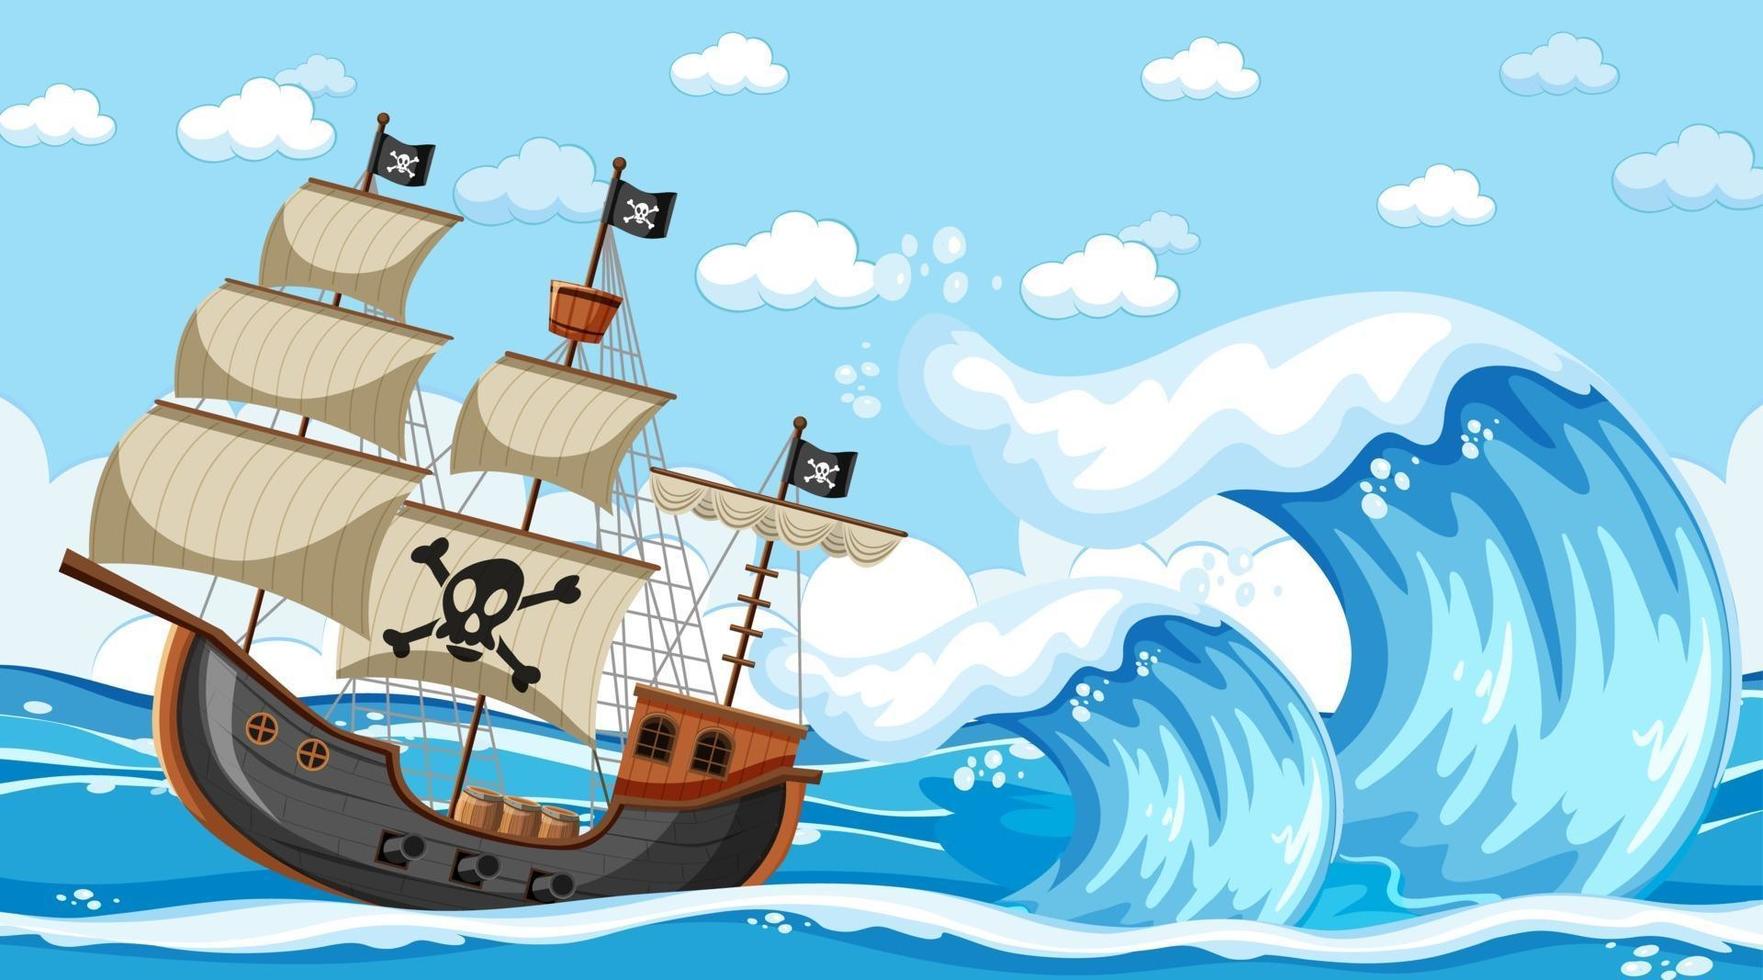 havsscen vid dagtid med piratskepp i tecknad stil vektor